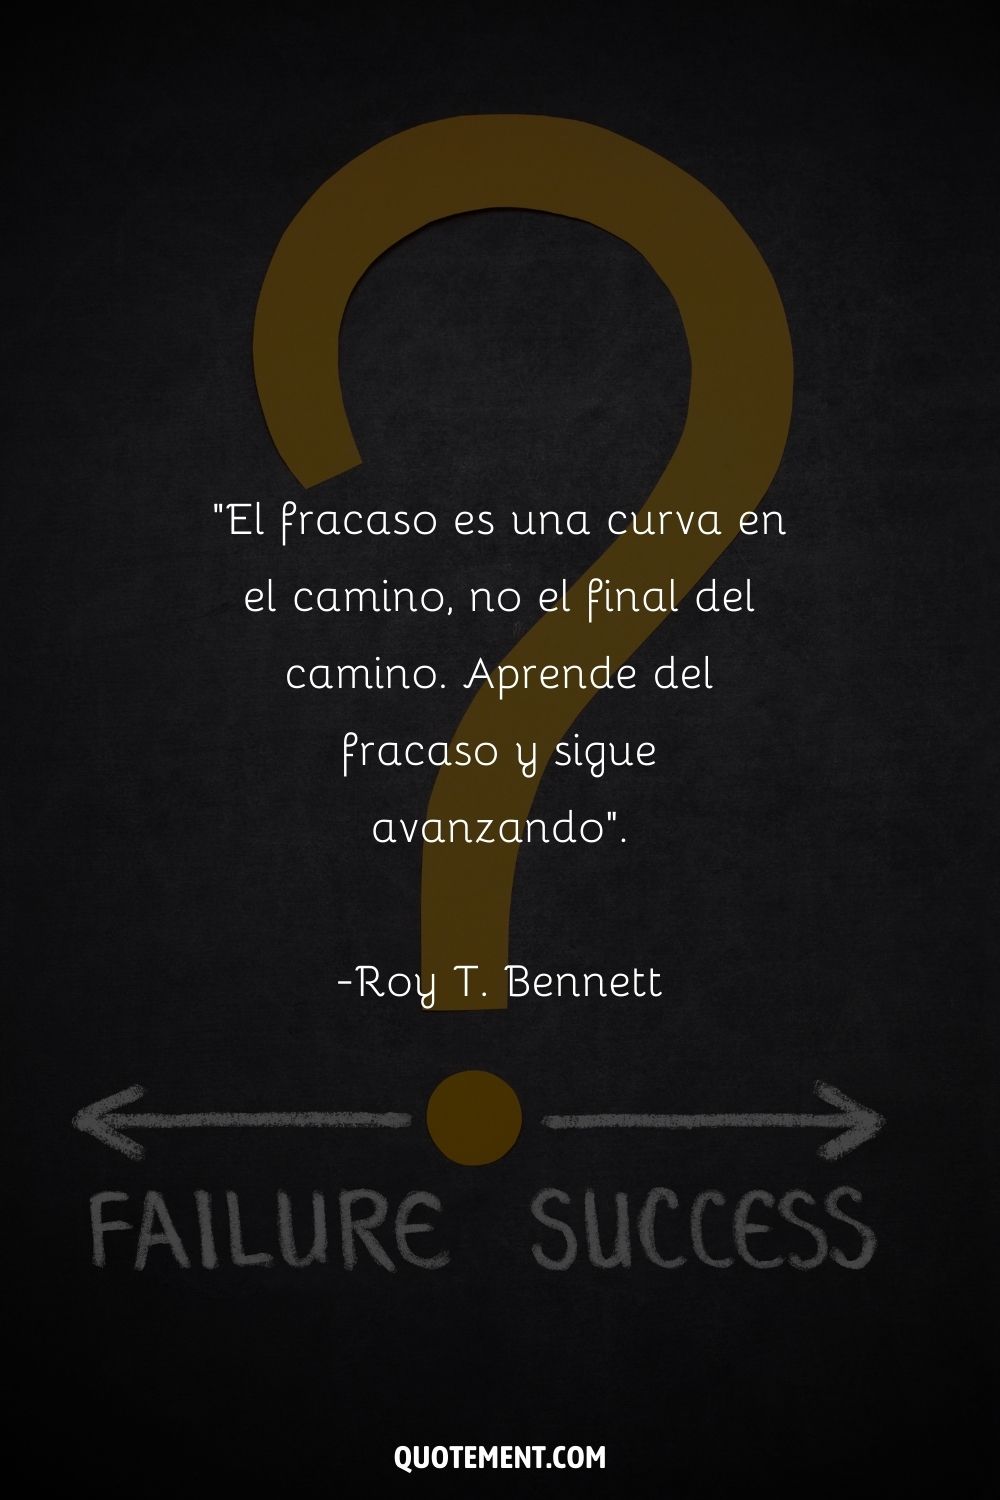 "El fracaso es una curva en el camino, no el final del camino. Aprende del fracaso y sigue avanzando". - Roy T. Bennett